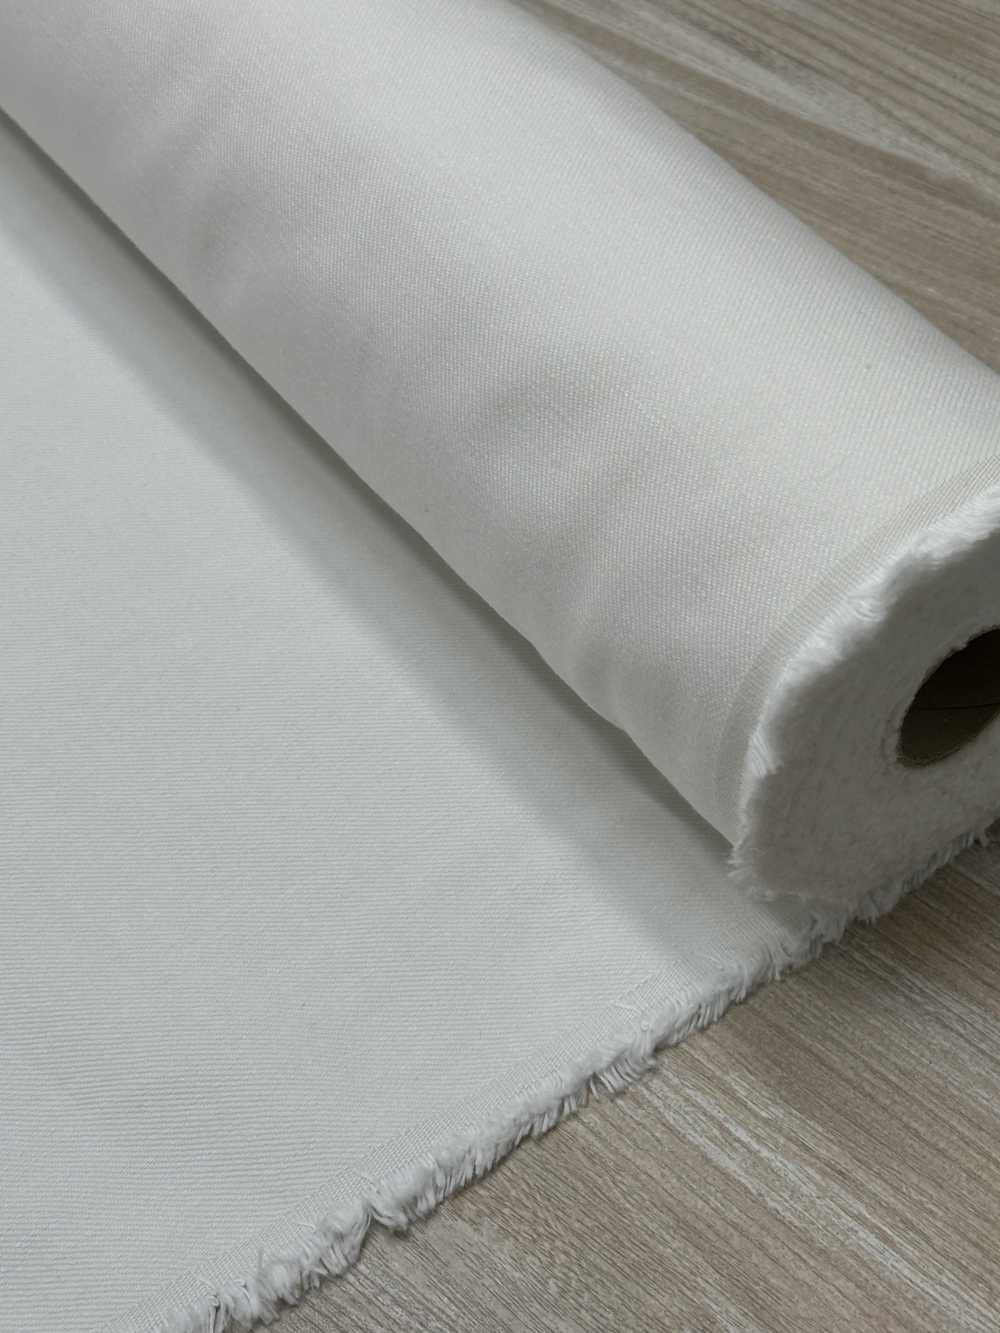 DENIM-OUTLET Denim-Textil-Outlet[Textilgewebe]